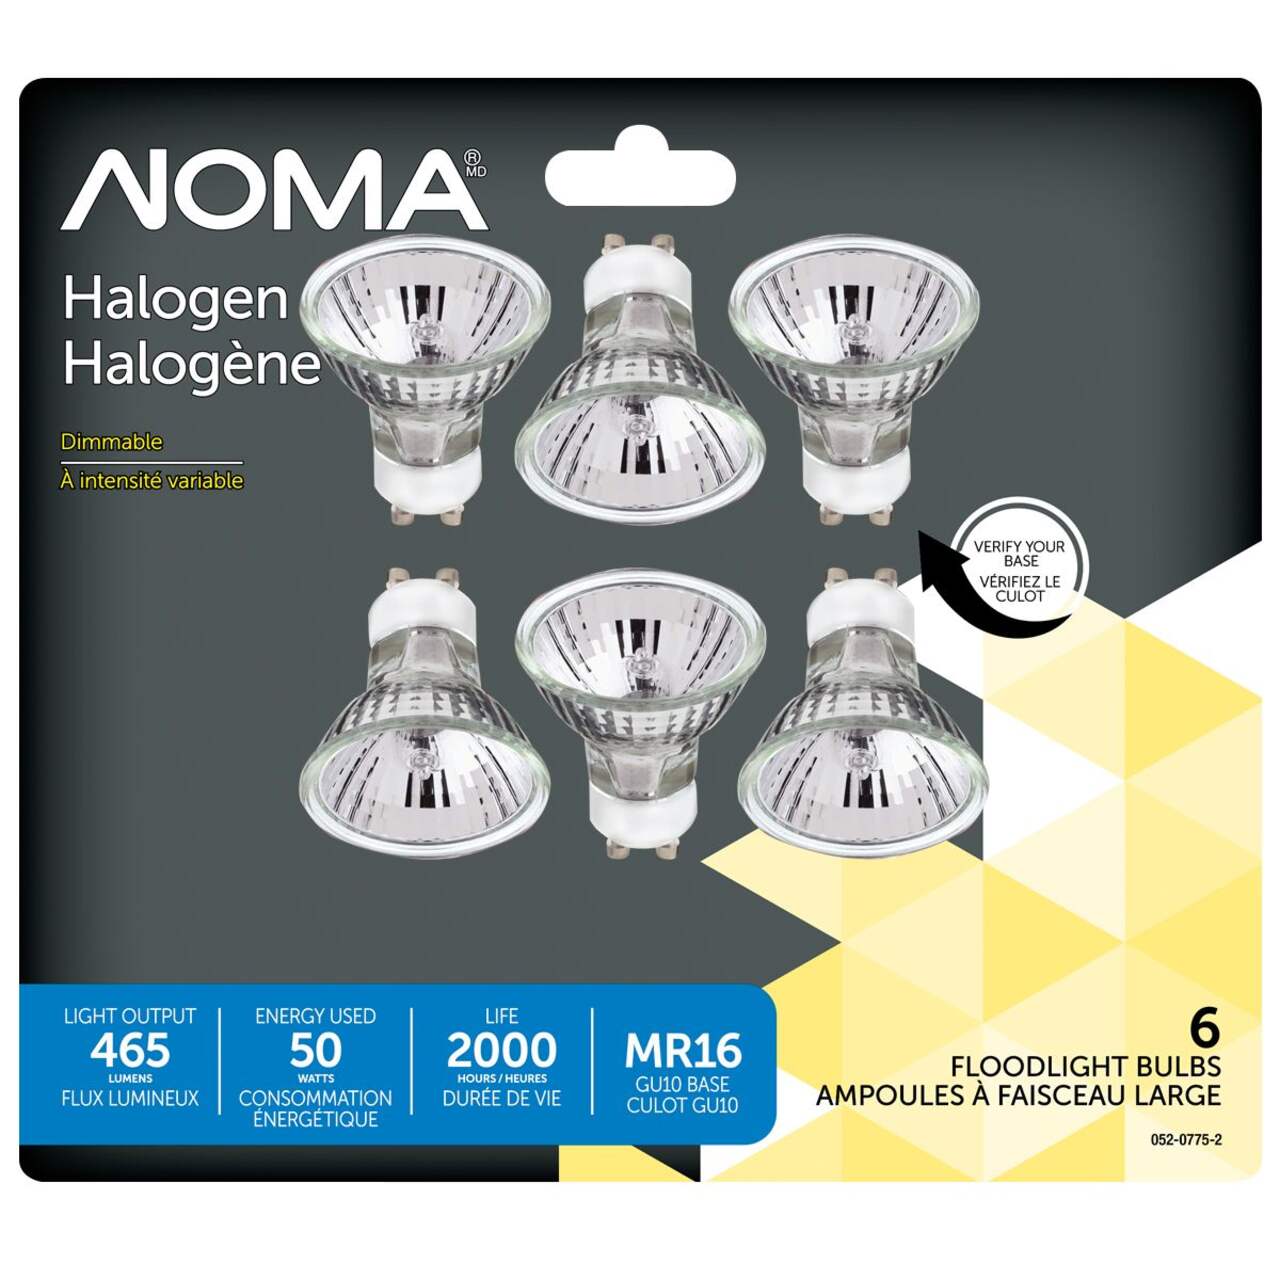 Ampoules pour projecteur halogènes à culot GU5.3 à intensité variable NOMA  MR16, 2700K, 350 lumens, blanc doux, 35 W, paq. 2